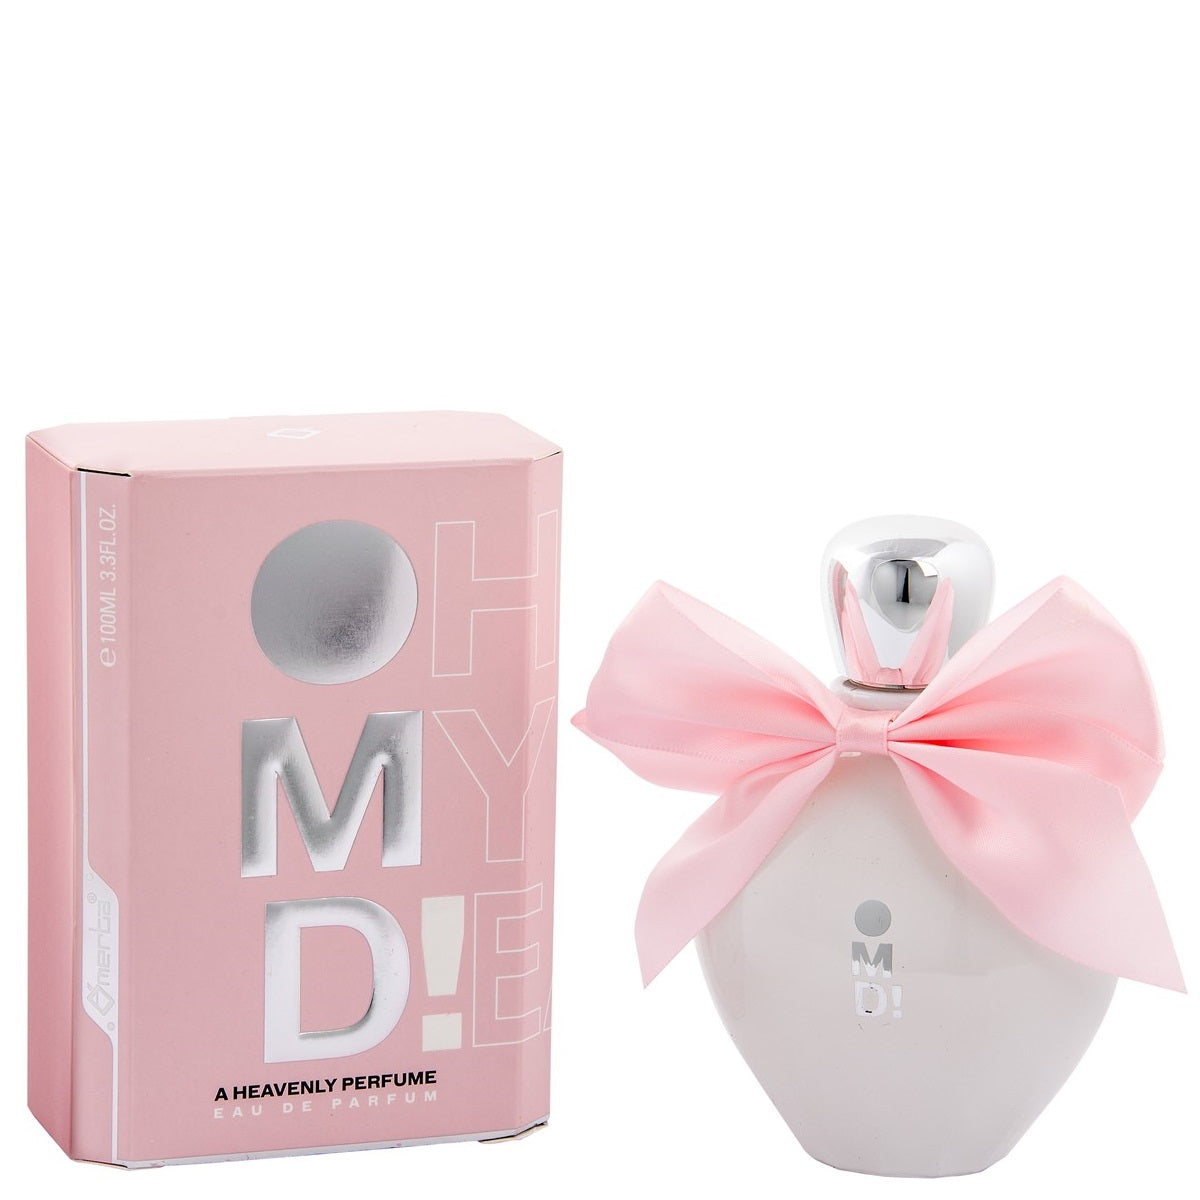 100 ml Eau de Perfume "OMD" Hedelmäinen, marjainen ja kukkainen tuoksu naisille,  korkea 6%:n hajusteöljypitoisuus